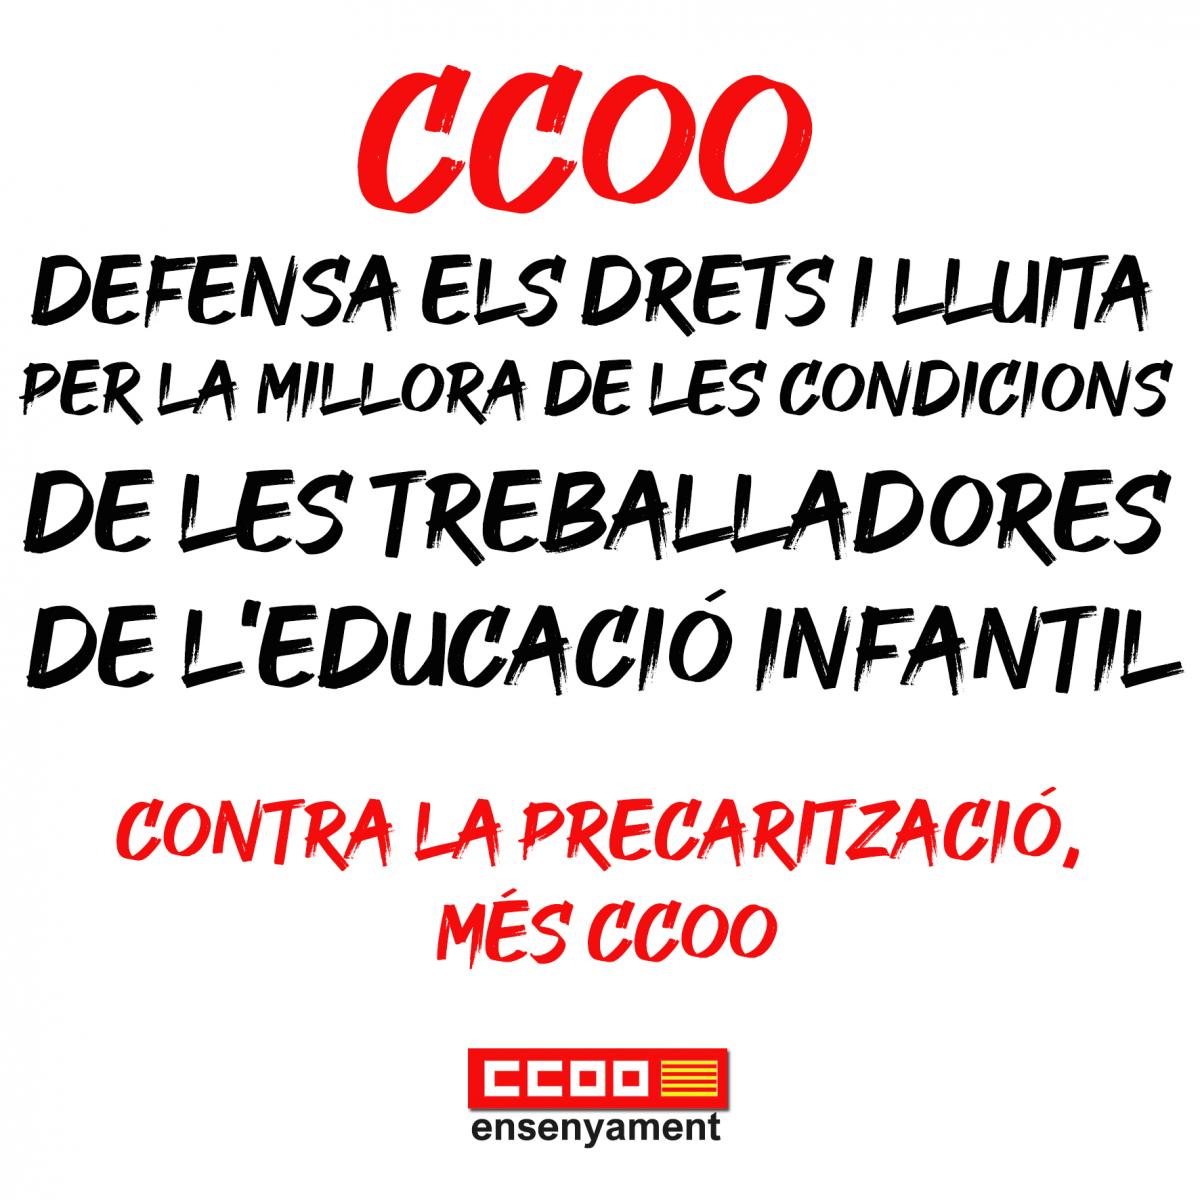 CCOO en defensa de 0-3